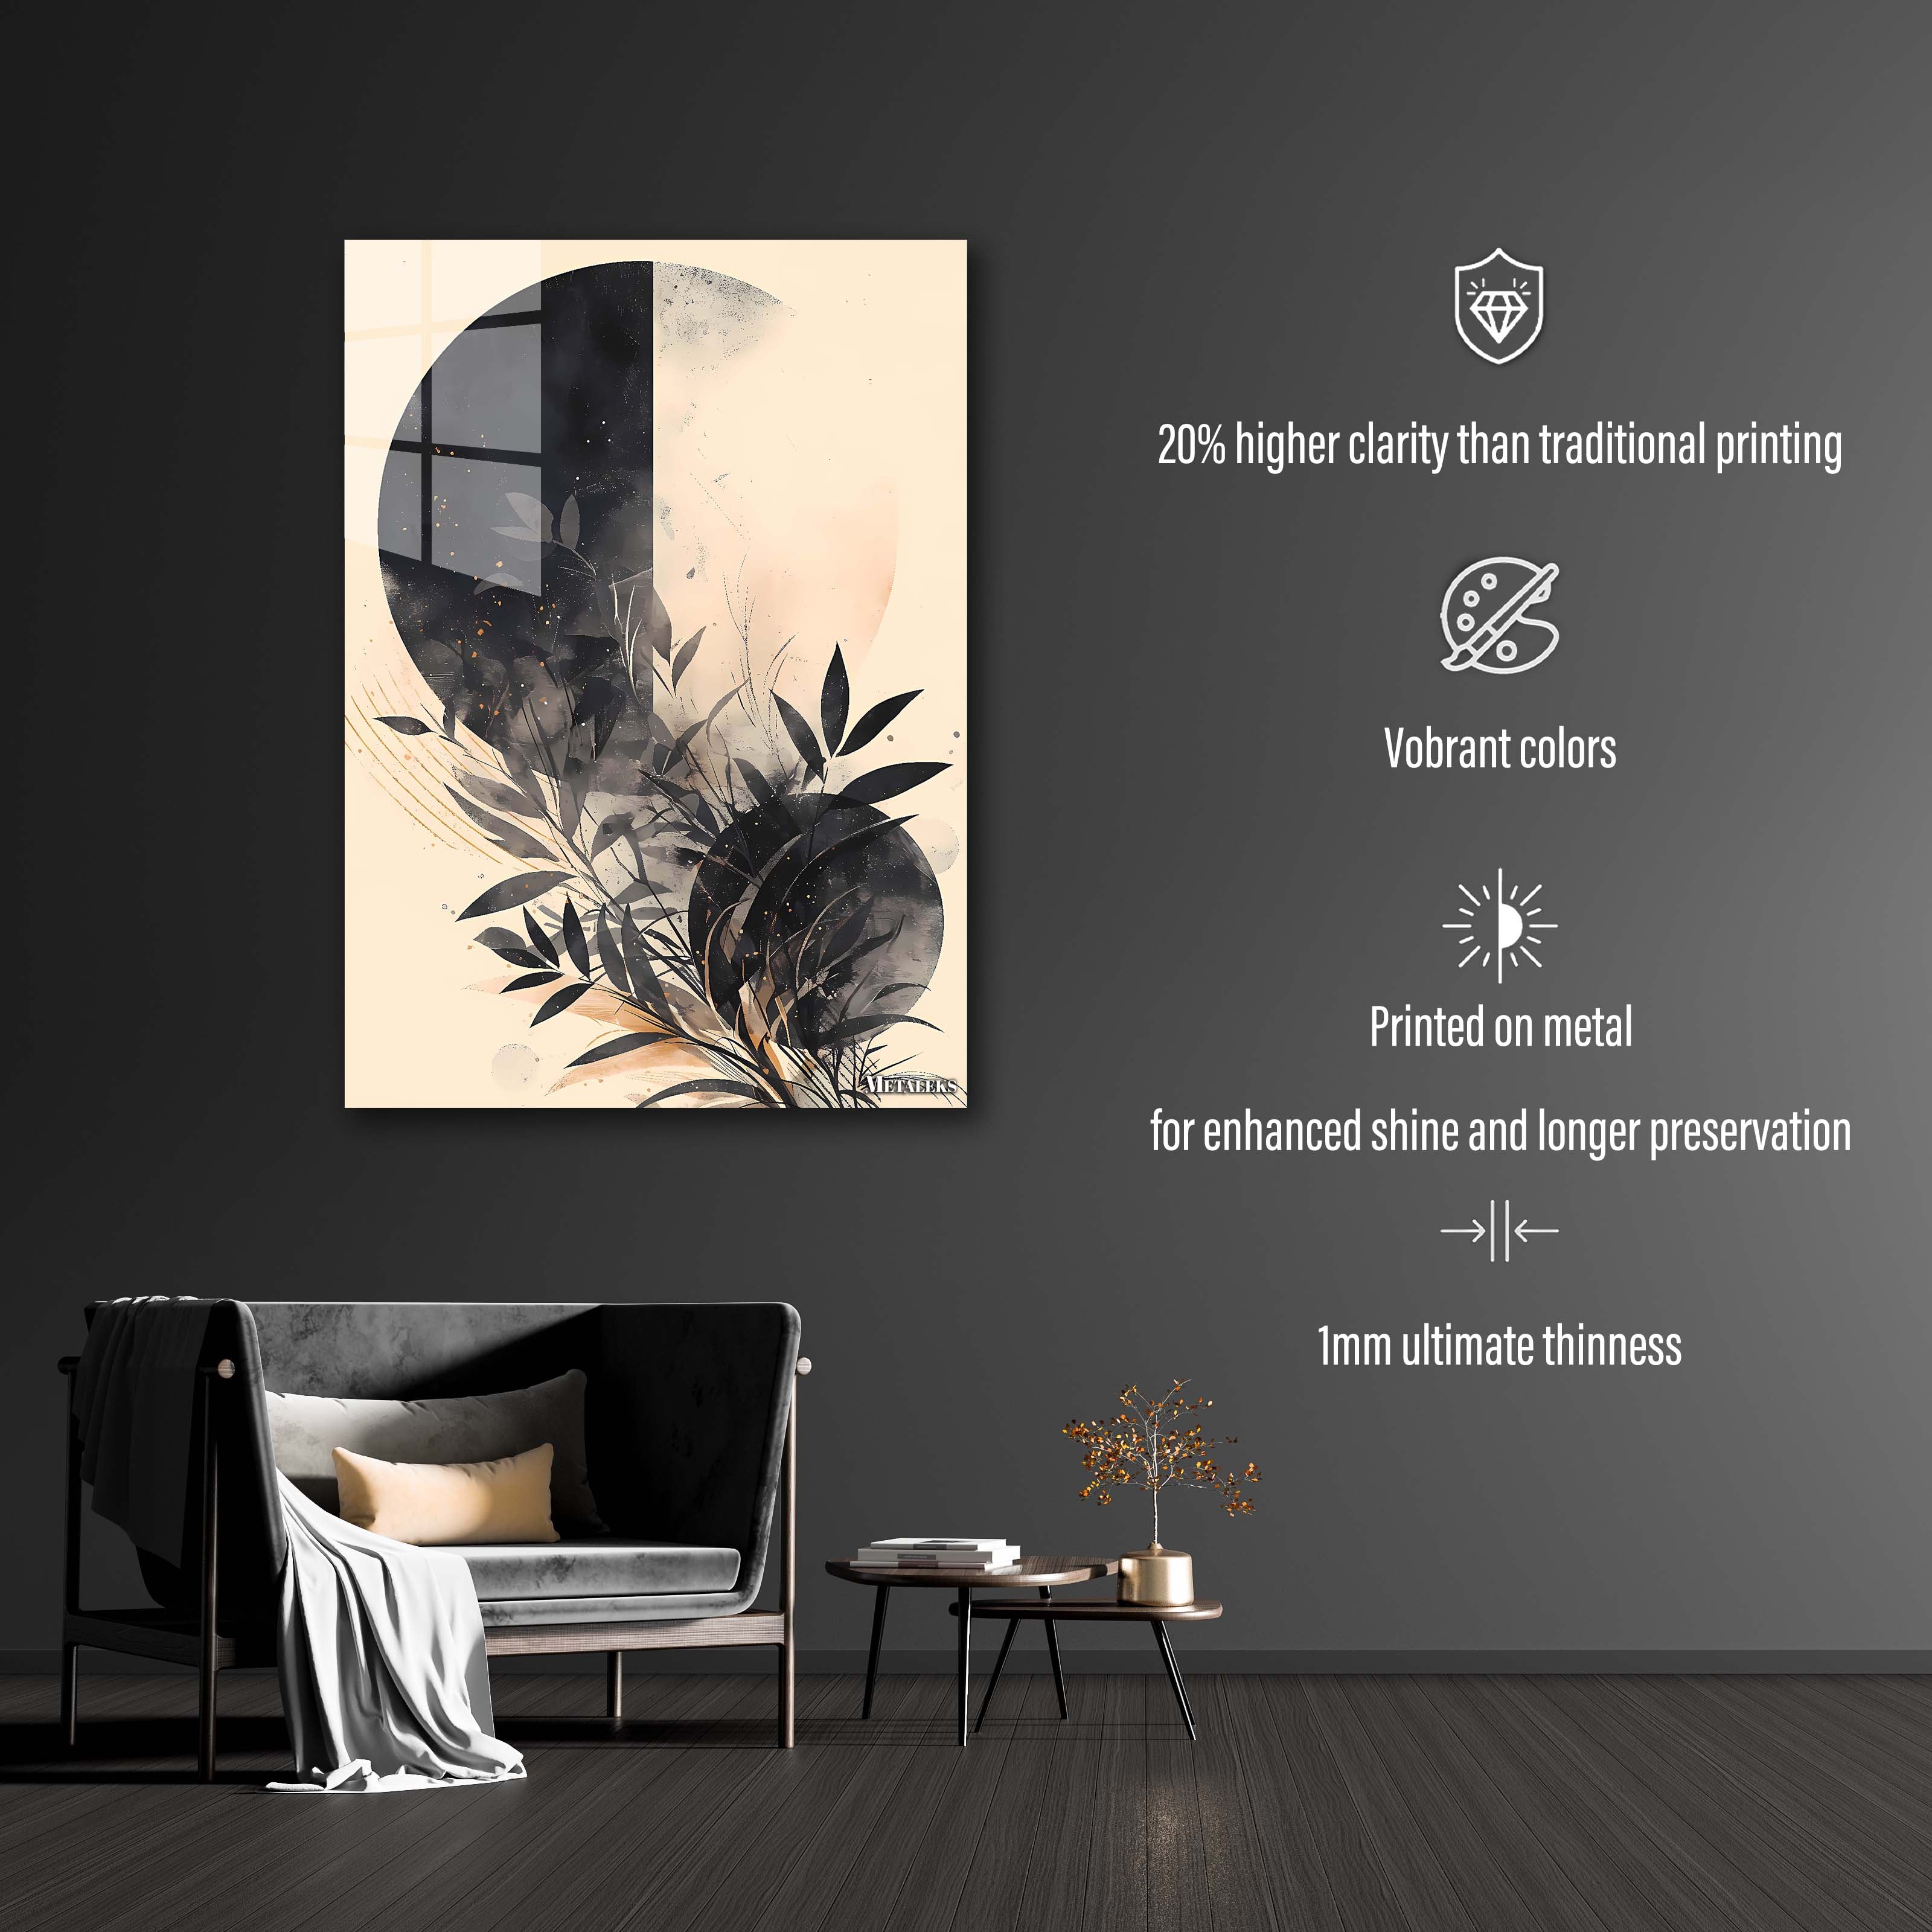 Yin-Yang Botanical Balance-designed by @TechBrushCreations